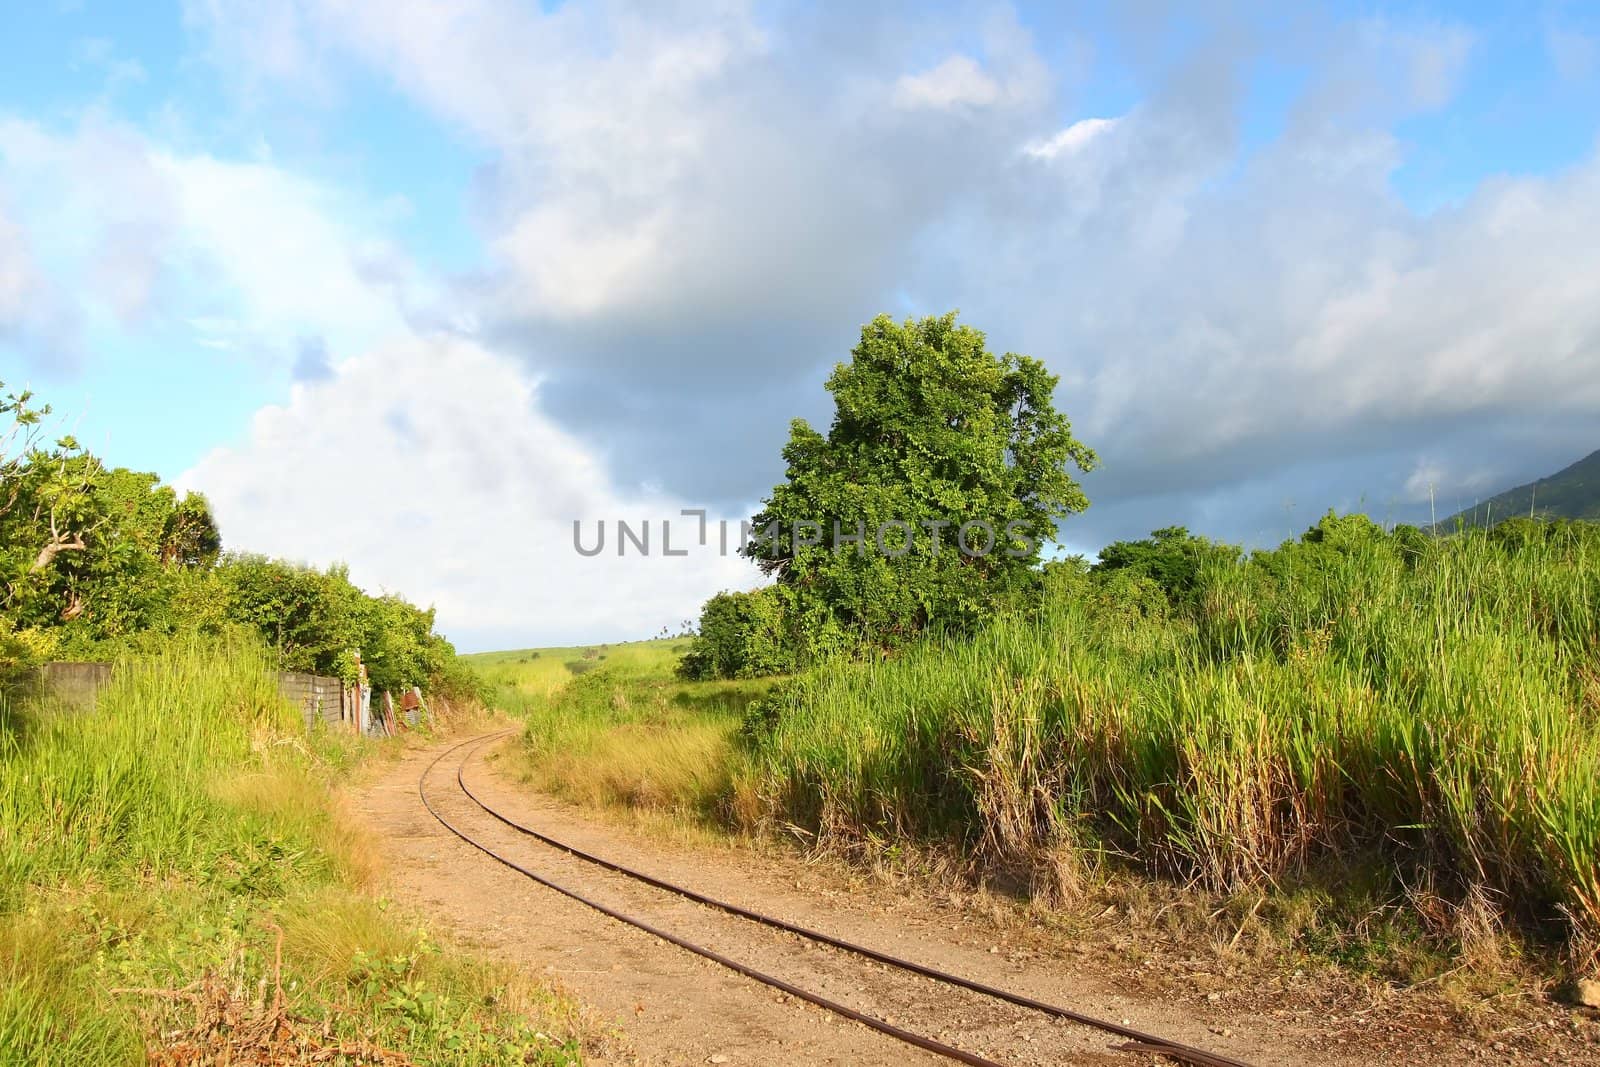 Railroad tracks run through a sugar cane field on Saint Kitts.